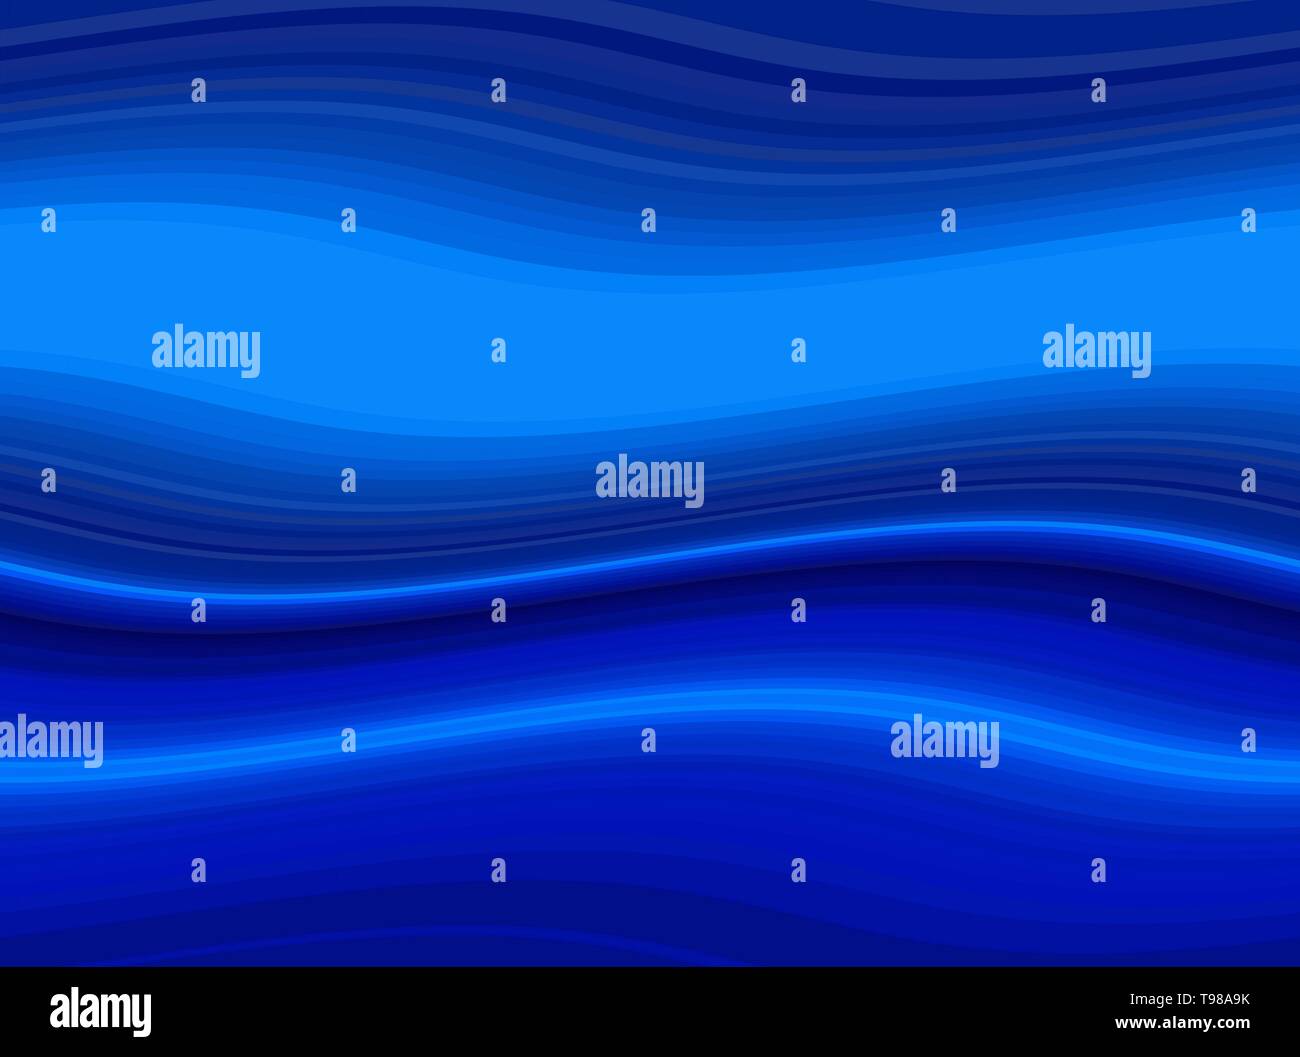 Résumé Contexte les vagues avec bleu foncé, bleu marine et bleu dodger. vagues de couleur peut être utilisé pour le papier peint, présentation, illustration graphique ou texte Banque D'Images